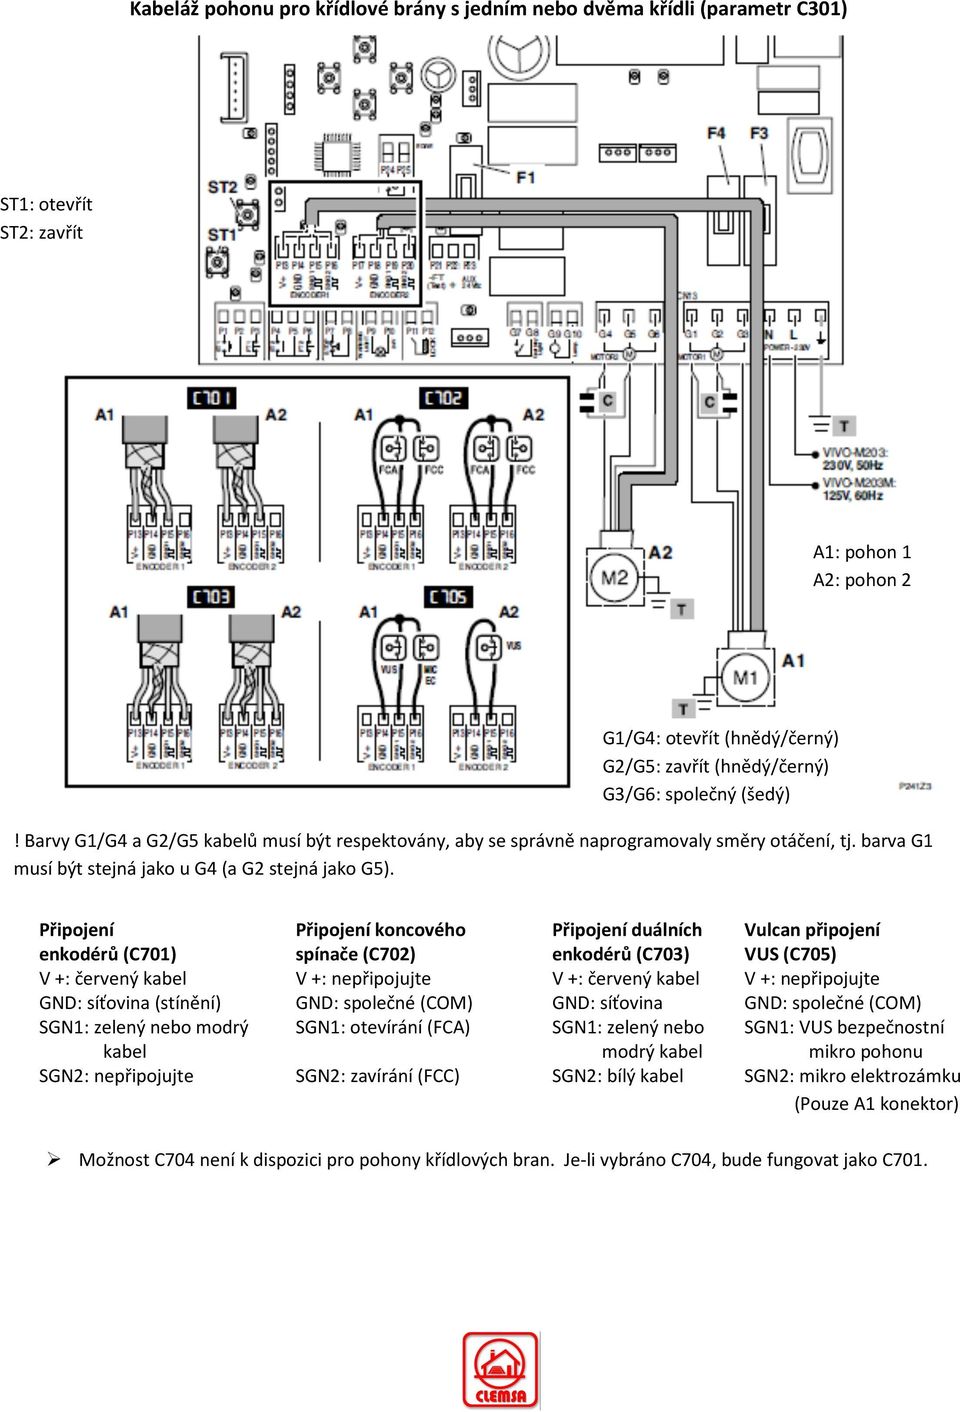 Připojení Připojení koncového Připojení duálních Vulcan připojení enkodérů (C701) spínače (C702) enkodérů (C703) VUS (C705) V +: červený kabel V +: nepřipojujte V +: červený kabel V +: nepřipojujte